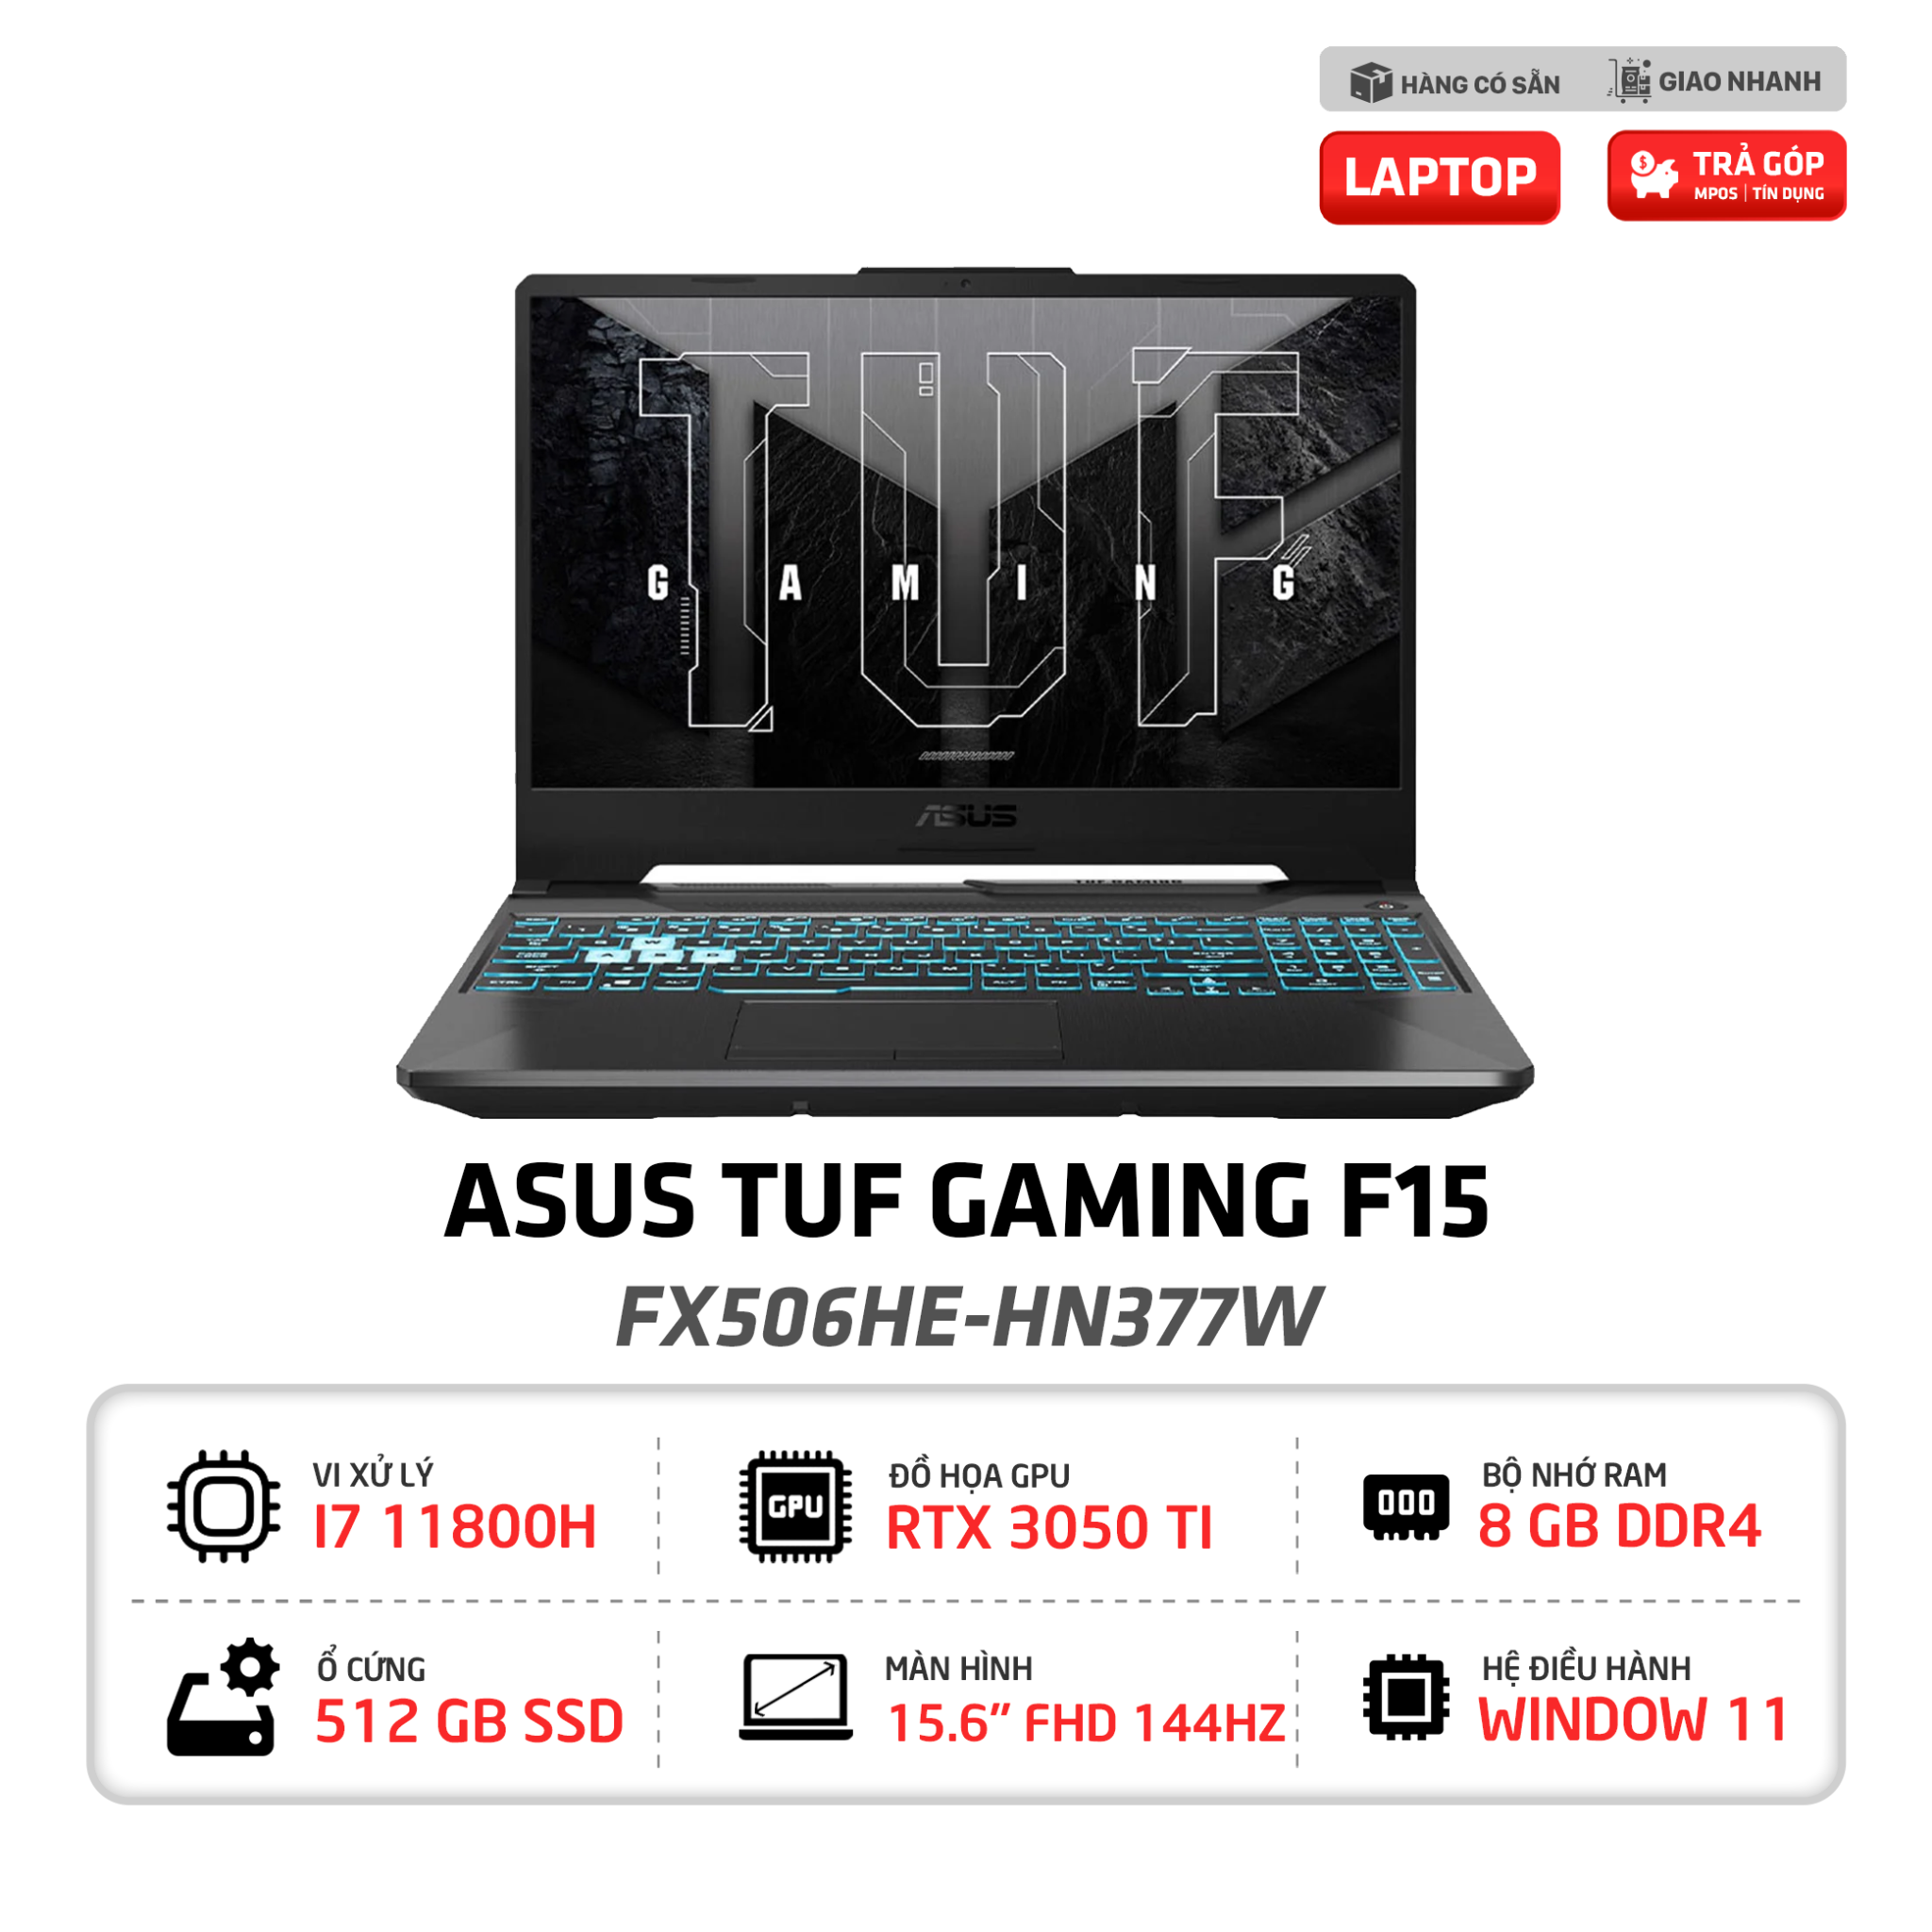 Laptop ASUS TUF Gaming F15 FX506HE HN377W